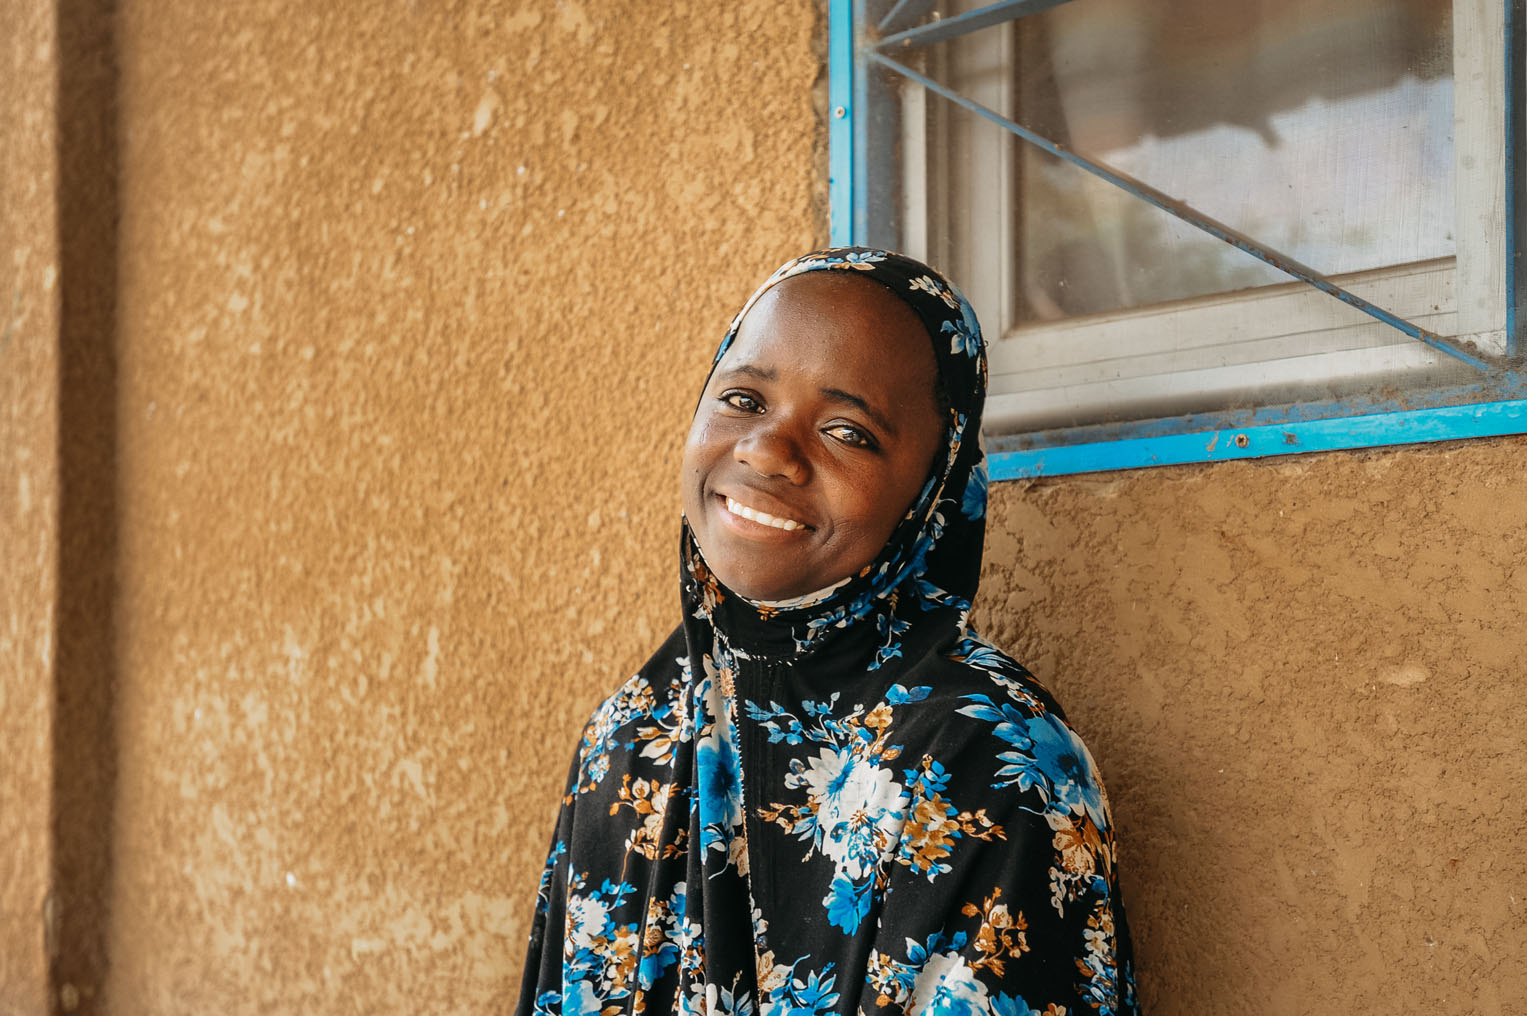 Una de las pacientes sonríe después de su recuperación después de una cirugía de fístula que la traerá a la normalidad y de regreso a la vida comunitaria.